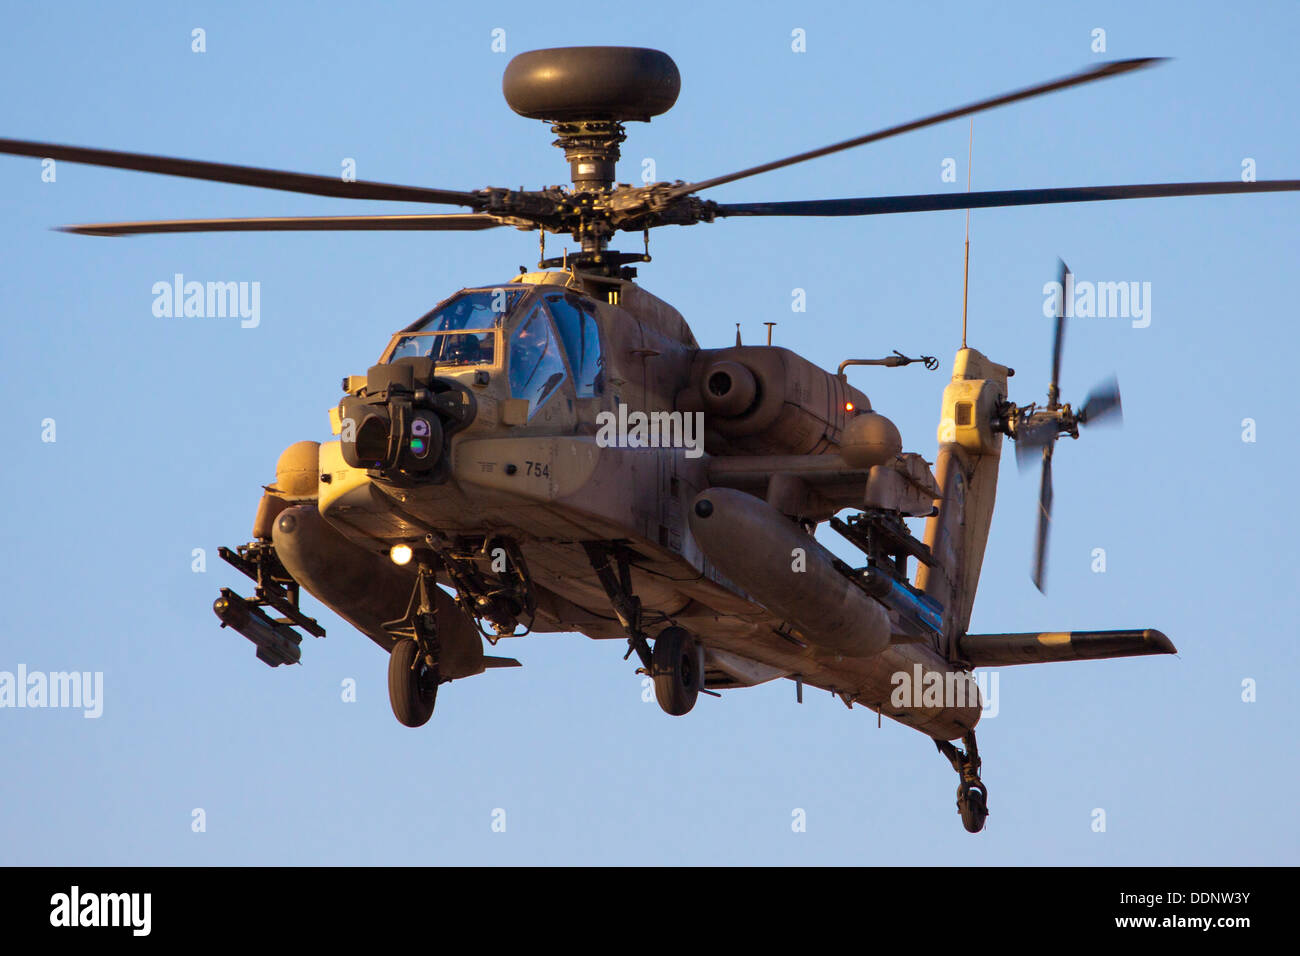 La Fuerza Aérea Israelí (IAF) Apache AH-644 el arco (Seraph) helicóptero en vuelo Foto de stock